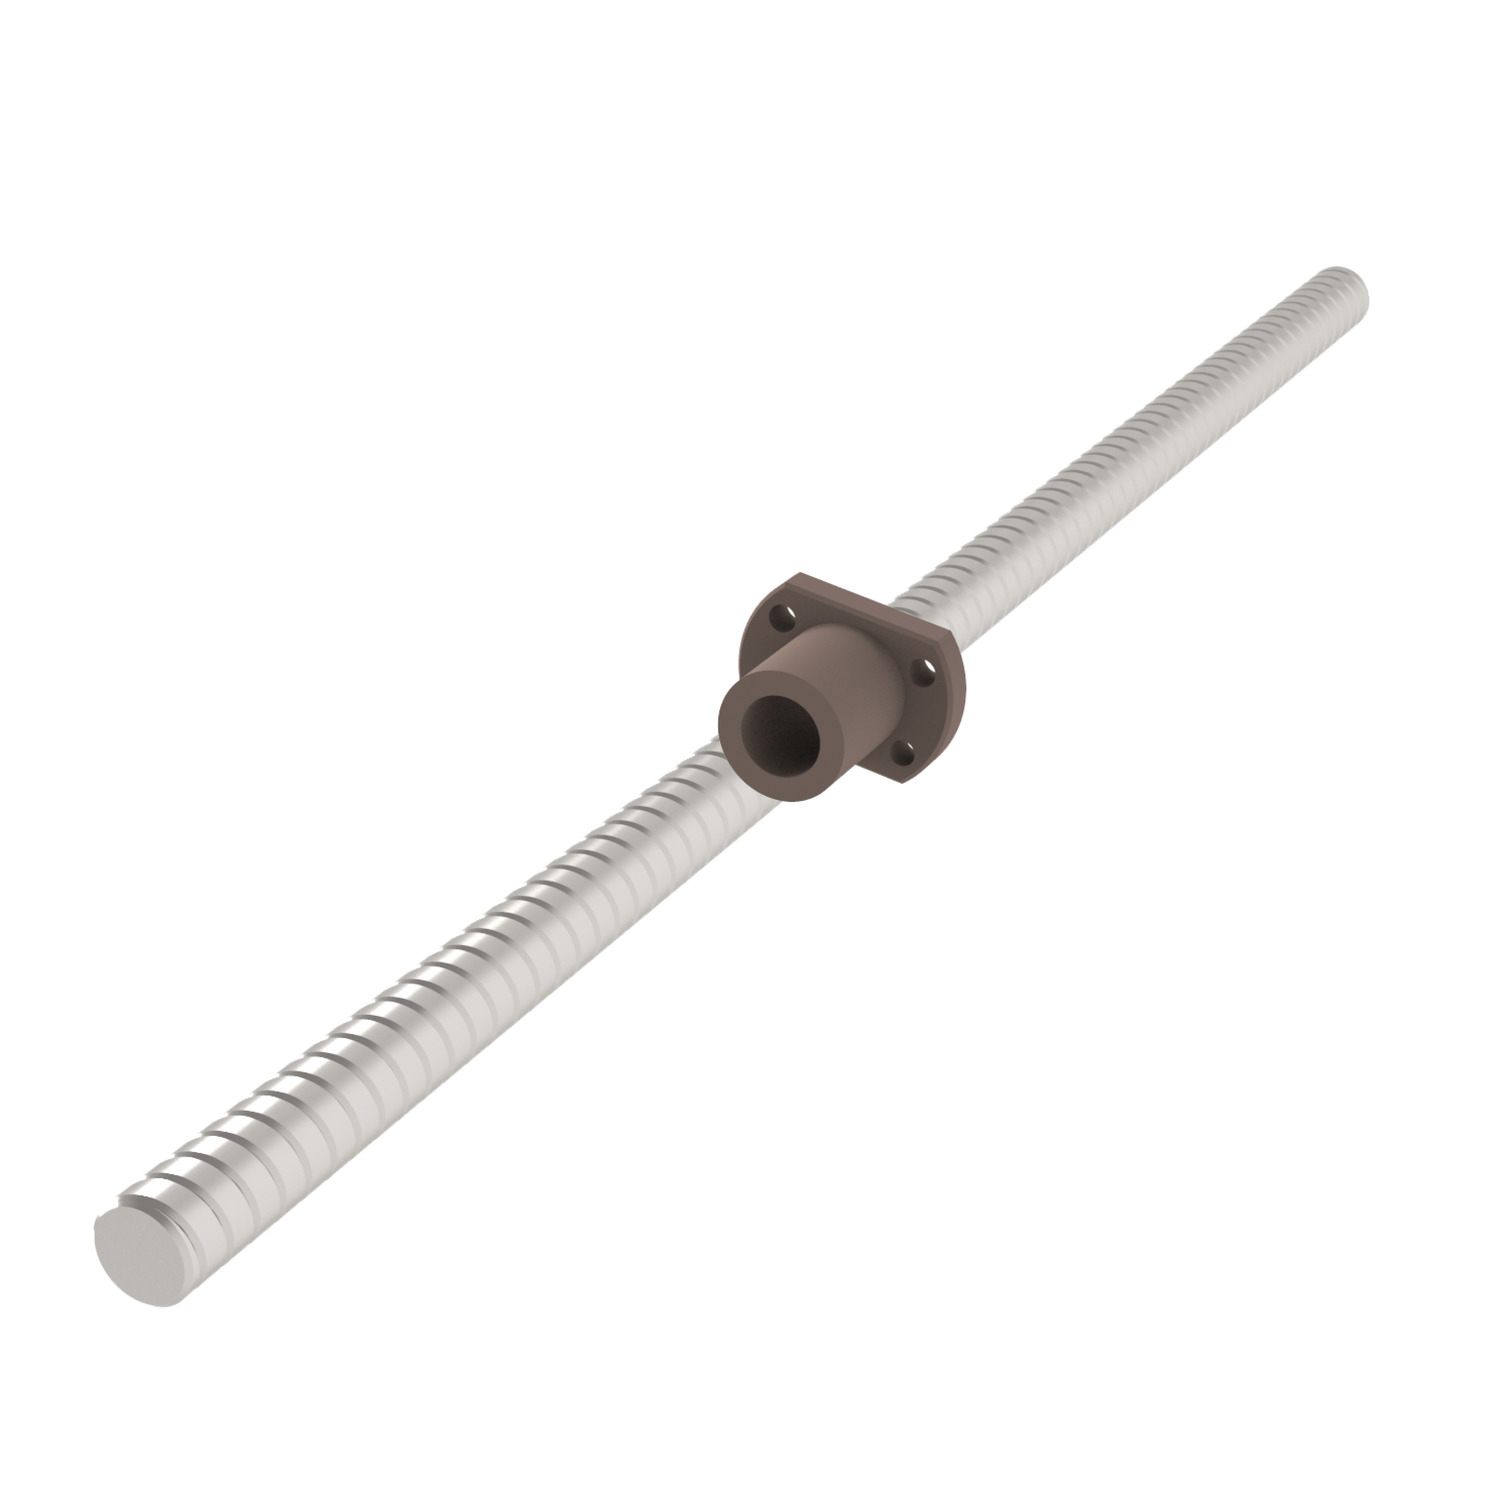 L1350.04-01 L1350.04-01 lead screw nut 